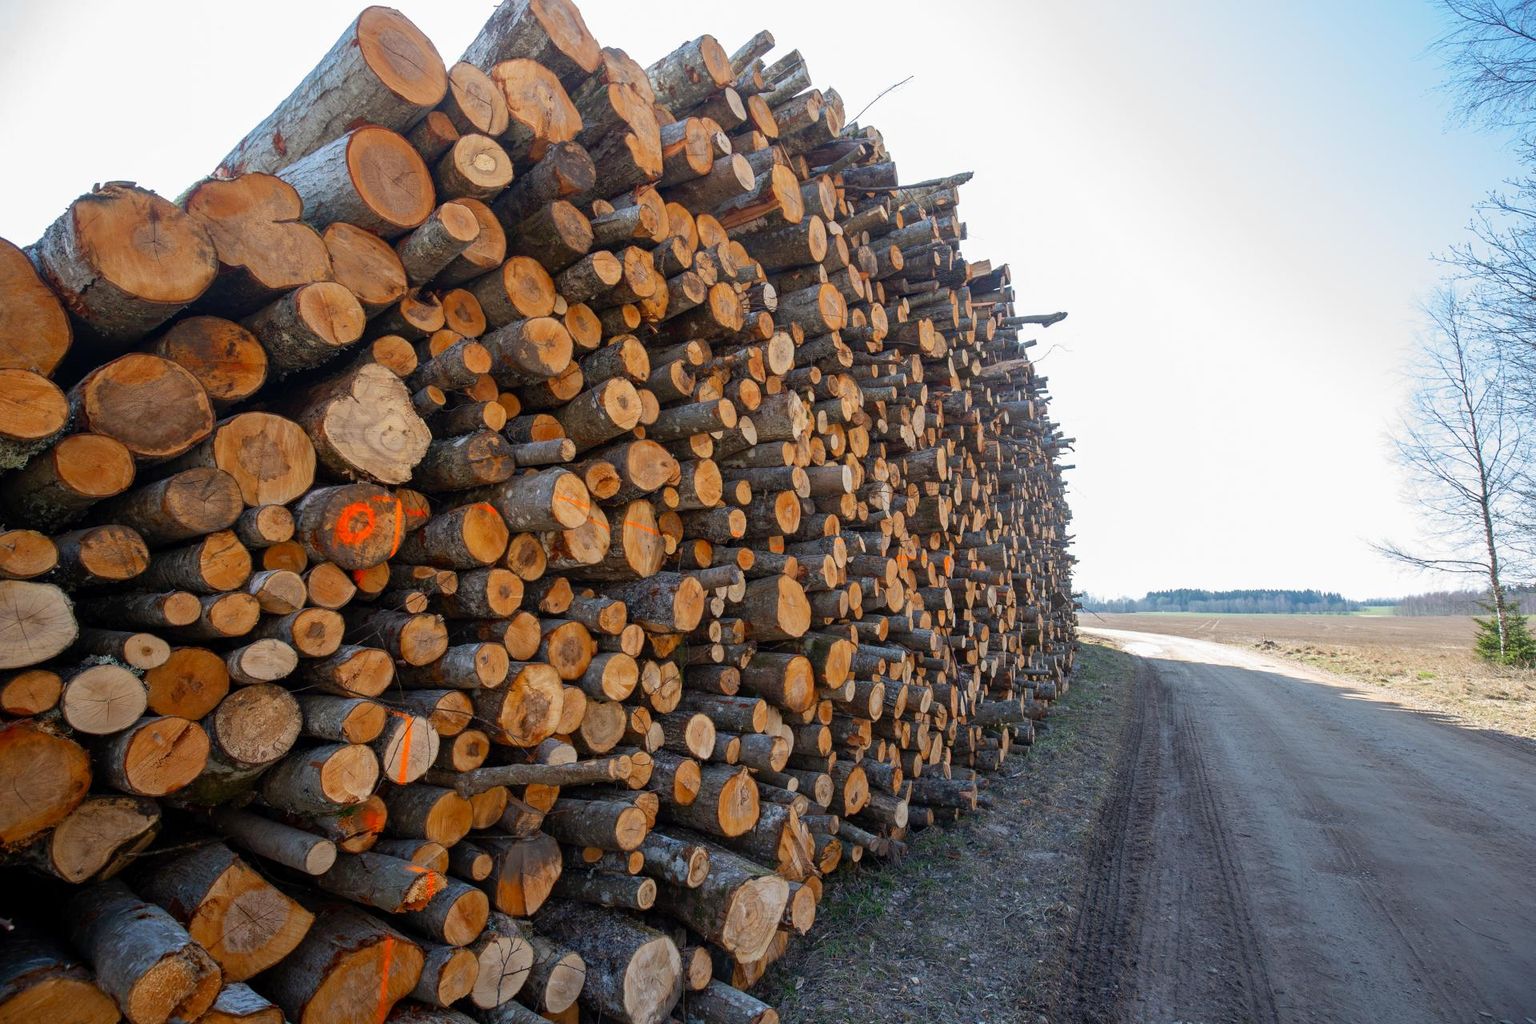 Meie metsad on aastakümneid suuresti omapäi kasvanud ja selle tõttu on ka sealt saadav materjal tihtilugu sobilik vaid kütte- või paberipuuks. Viimase väärindamiseks vajalikku tööstust aga Eestis napib.